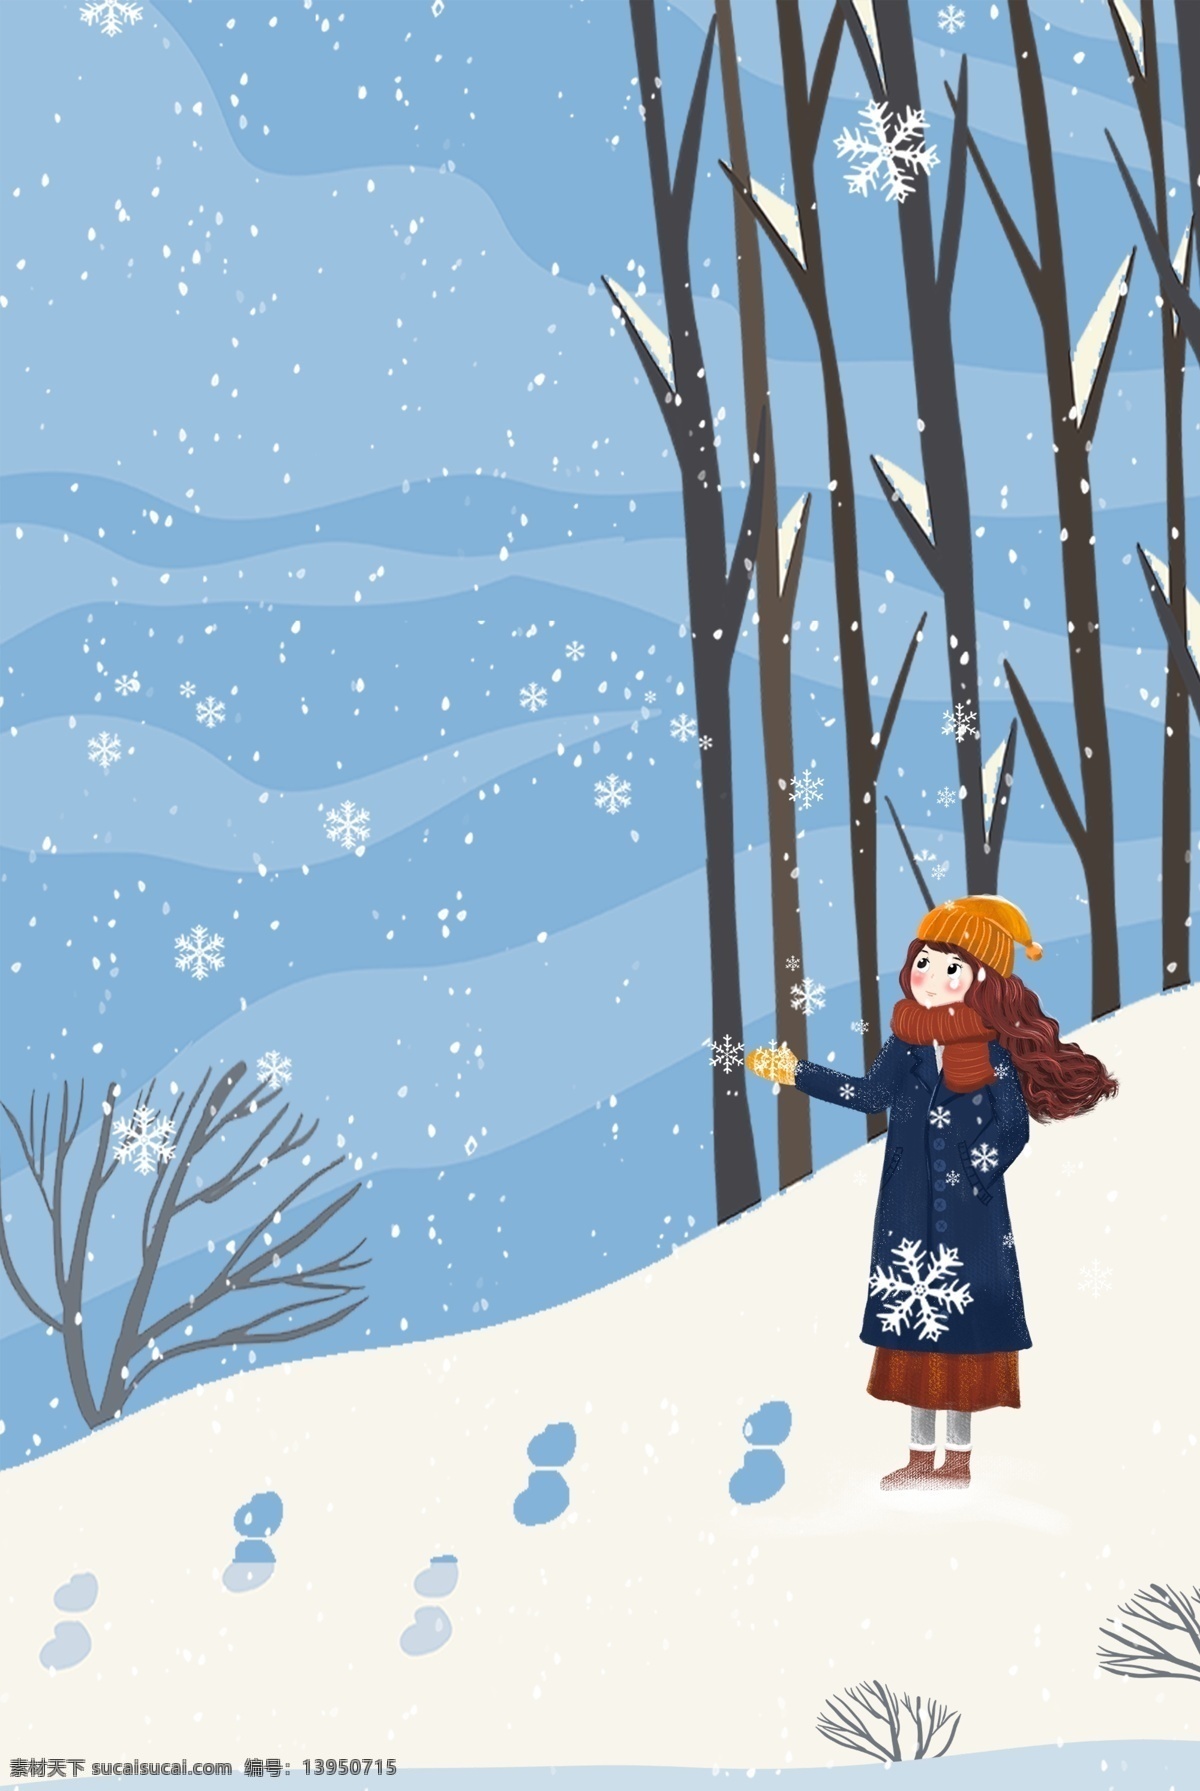 冬天 看 雪景 森林 女孩 服装 促销 海报 树木 雪花 出行 促销海报